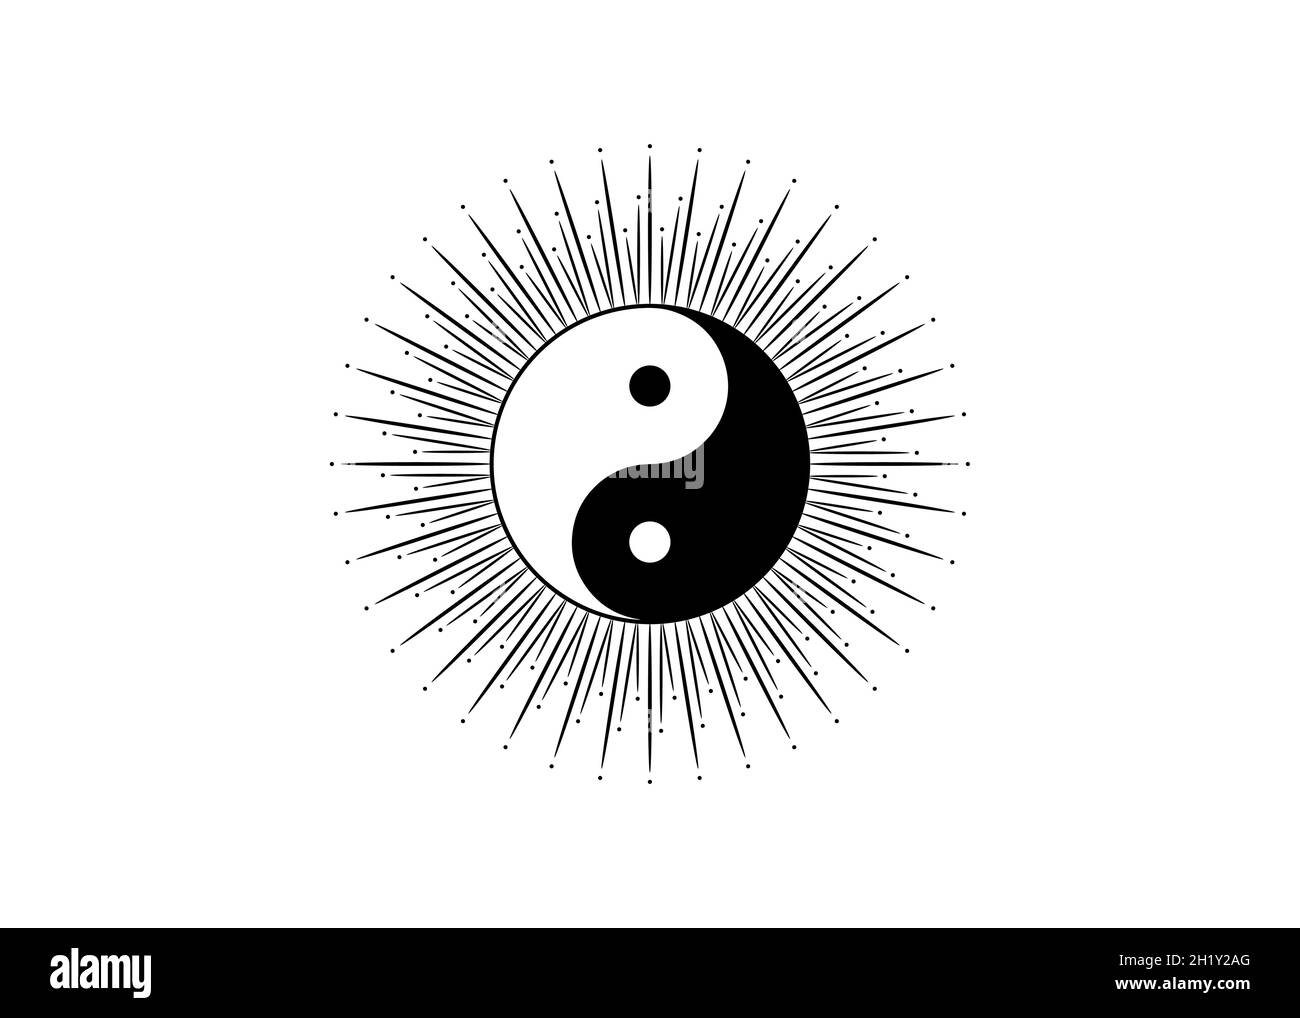 Ying Yang simbolo di armonia ed equilibrio, la filosofia cinese descrive come forze opposte e contrarie possano essere complementari, interconnesse Illustrazione Vettoriale